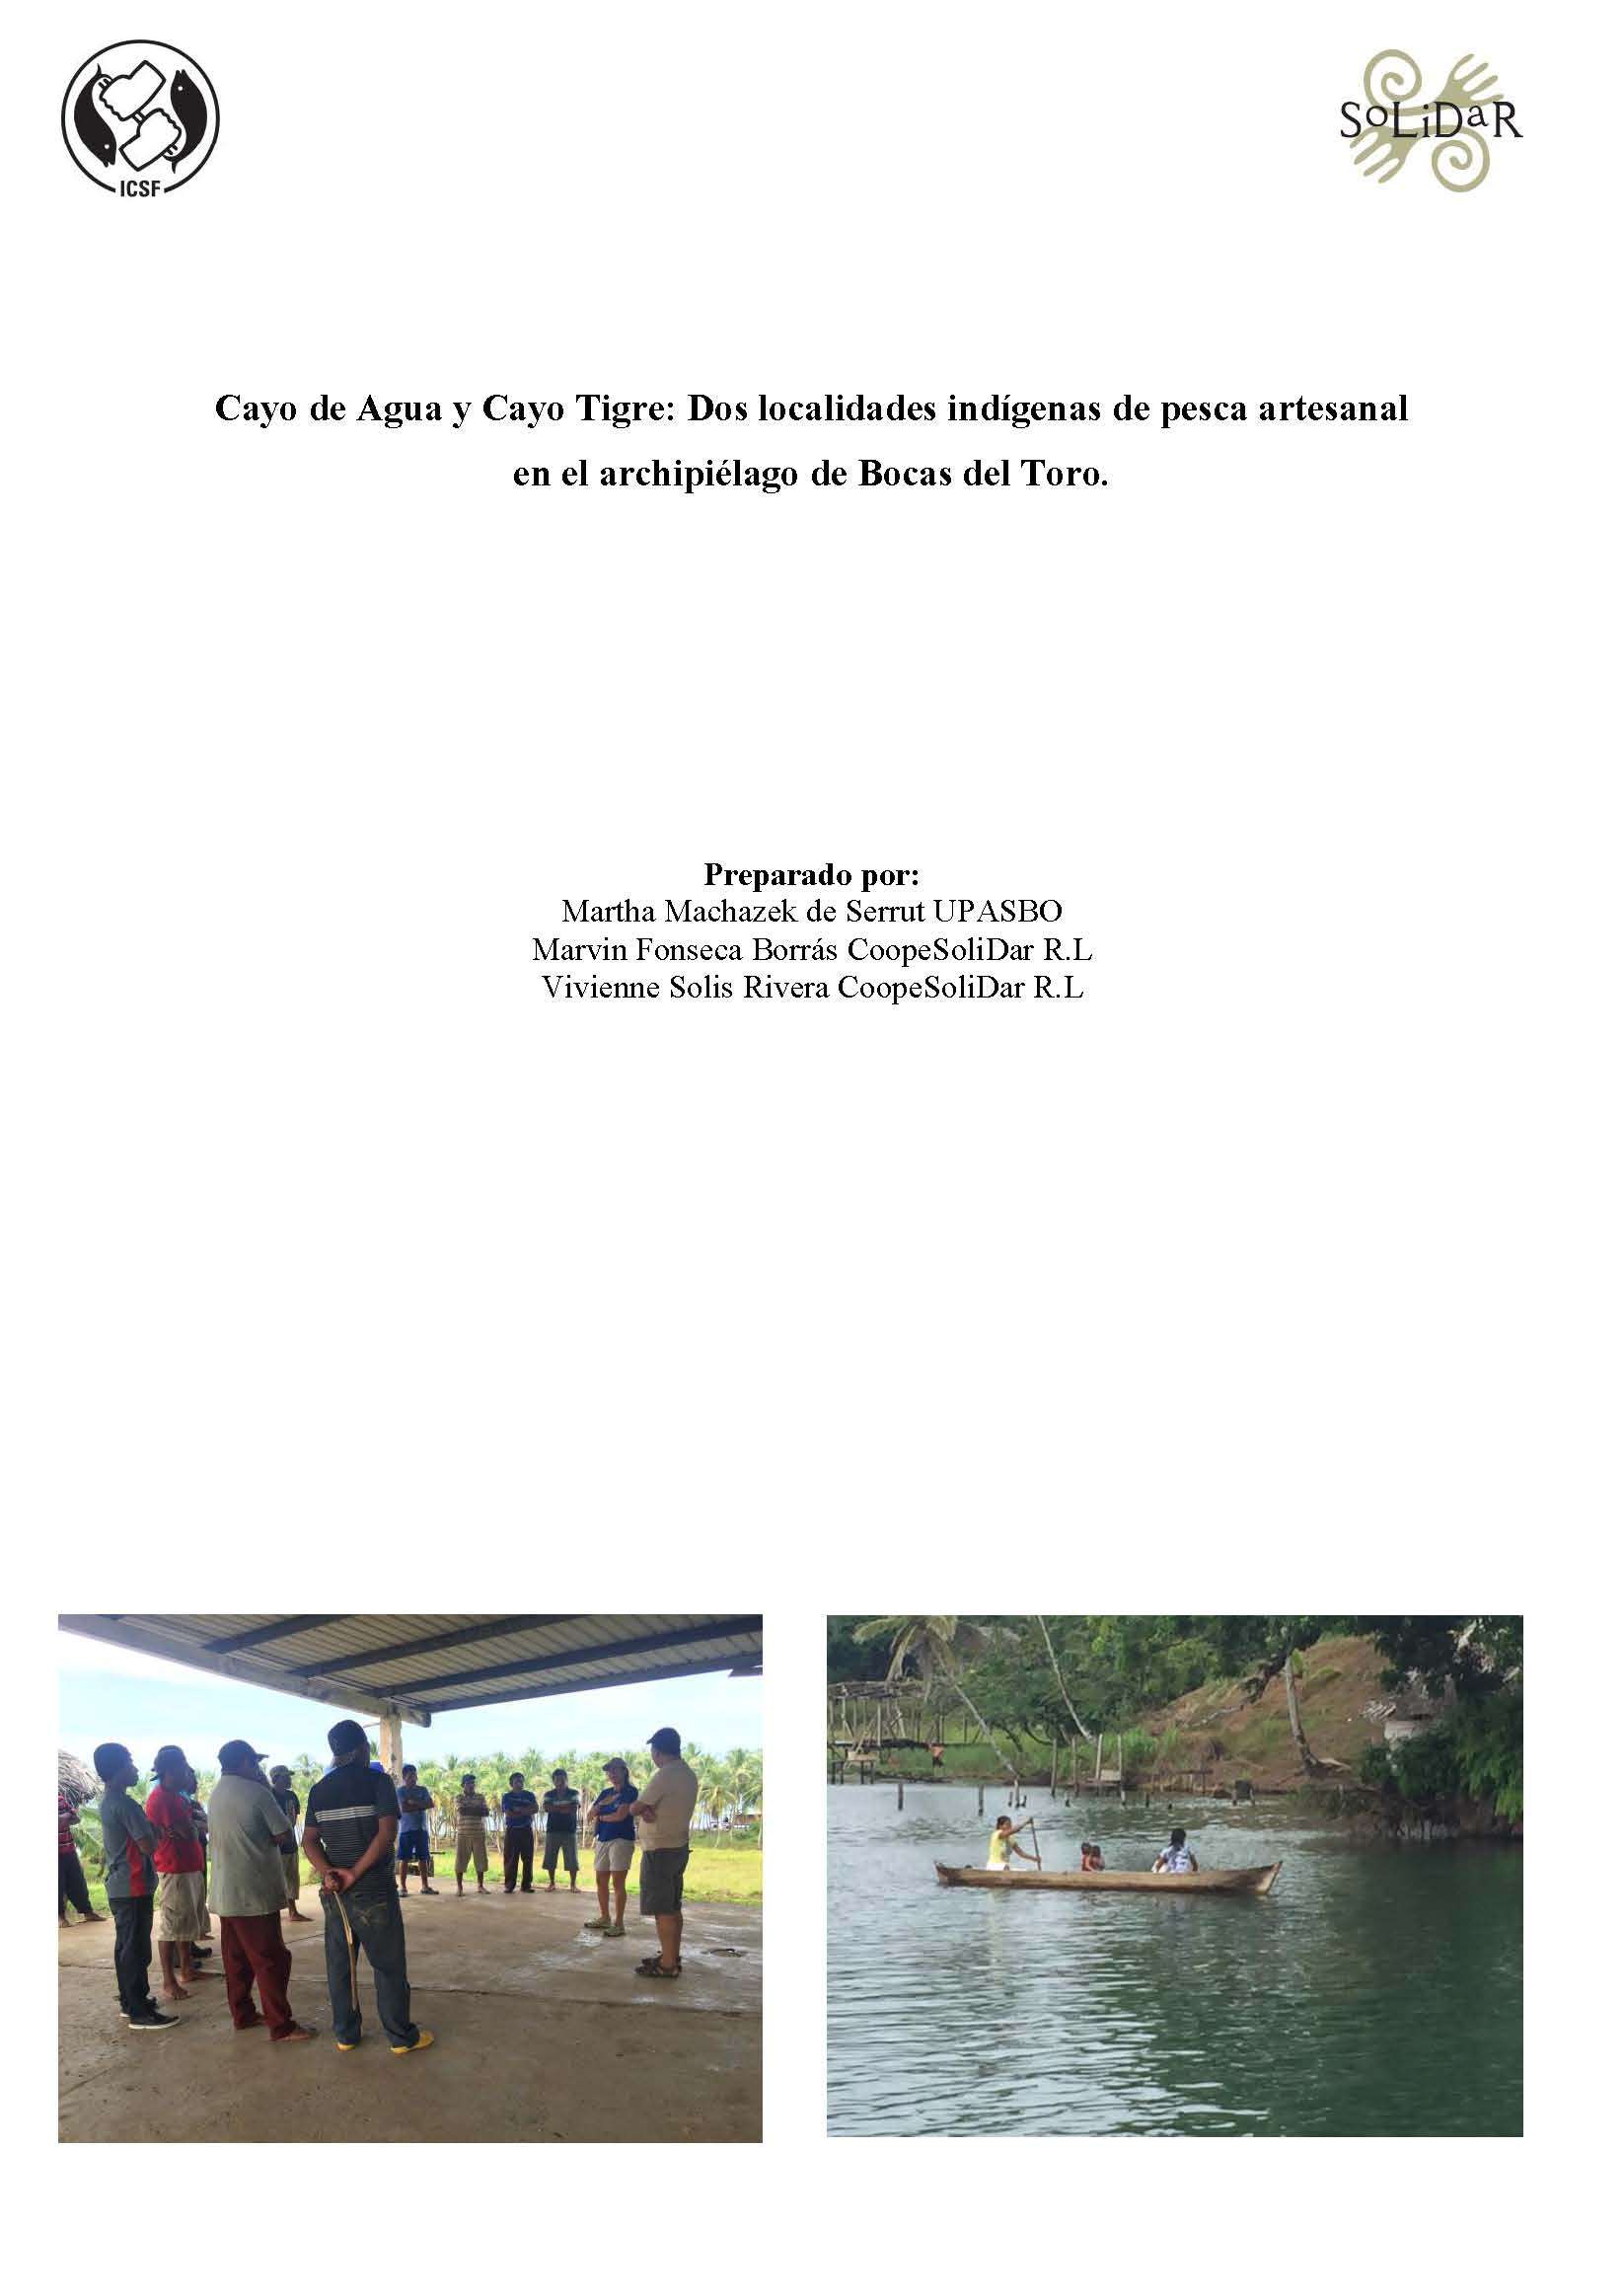 Cayo de Agua y Cayo Tigre: Dos localidades indígenas de pesca artesanal en el archipiélago de Bocas del Toro